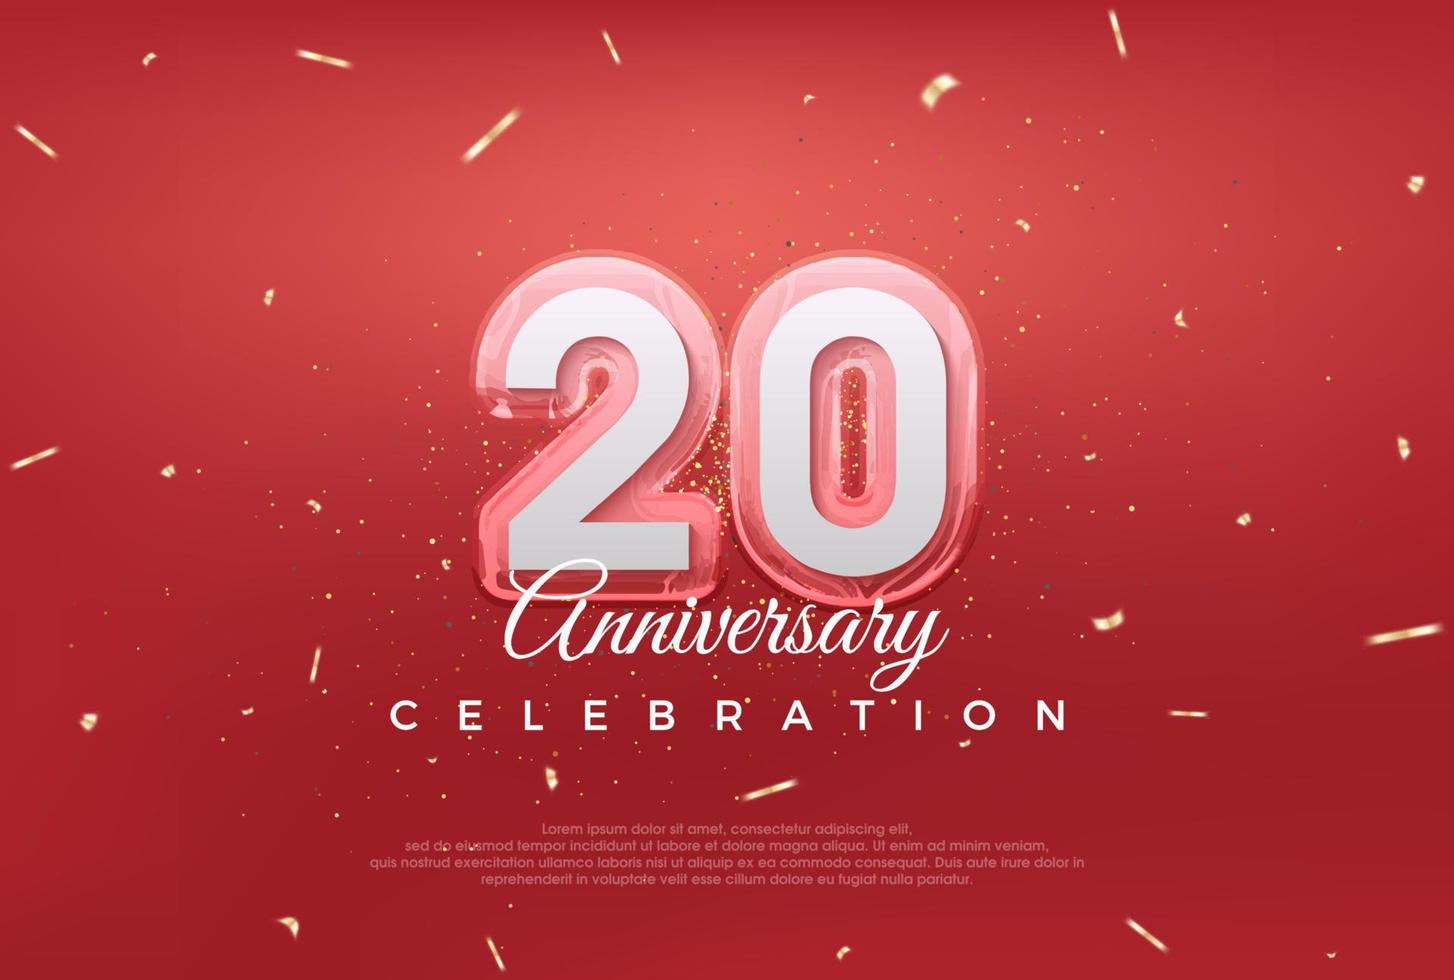 modernes Design für die Feier zum 20-jährigen Jubiläum. mit goldener Farbe auf rotem Hintergrund. vektor